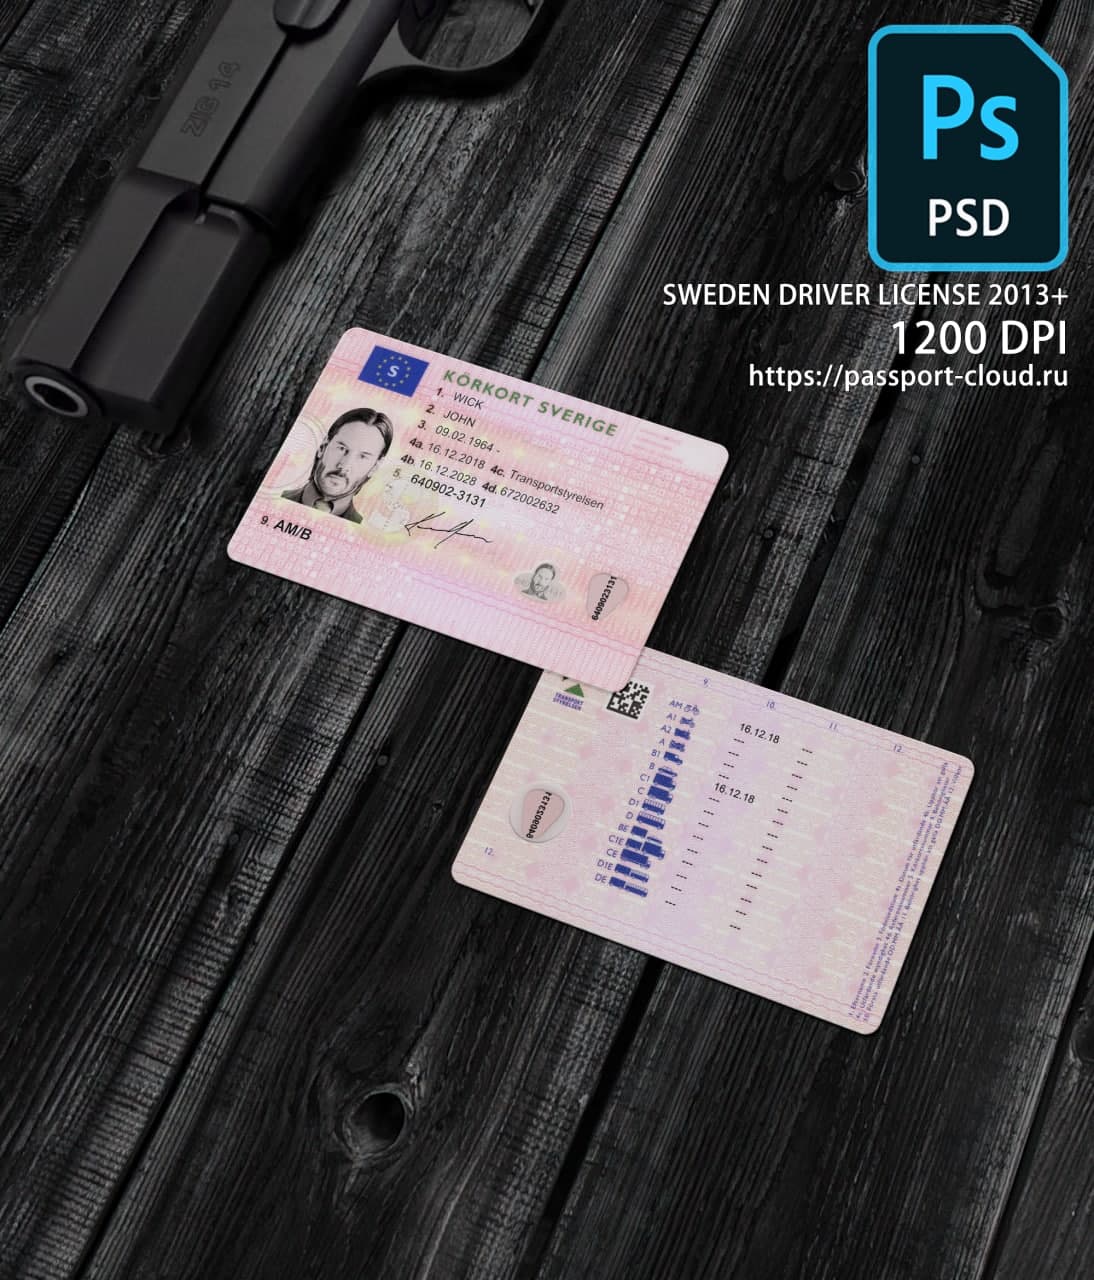 Sweden Driver License 2013+1